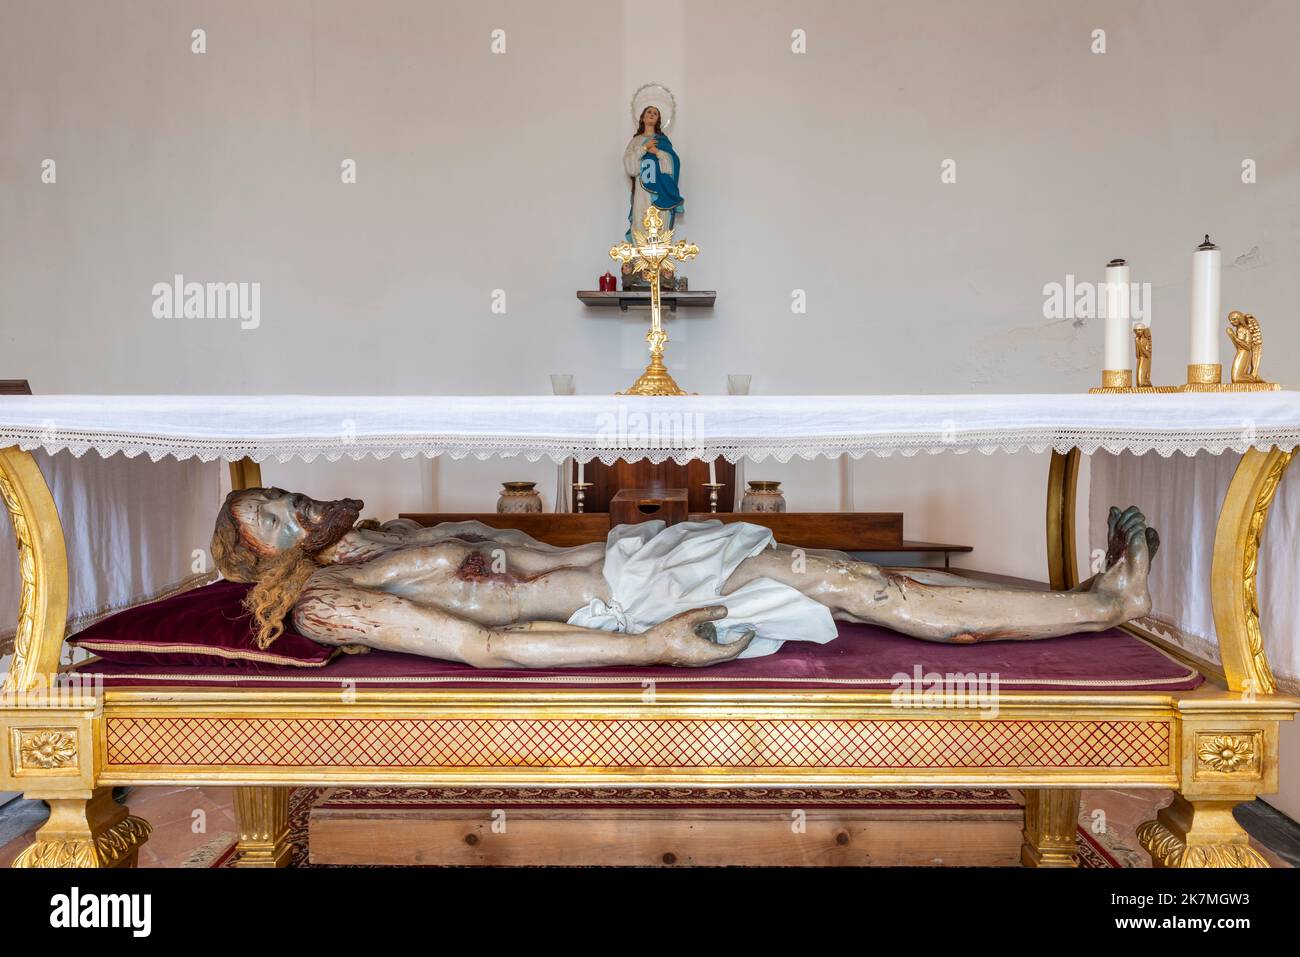 Ein brutal realistisches lebensgroßes Abbild des Leibes Christi nach seiner Kreuzigung in einer kleinen sizilianischen Dorfkirche Stockfoto